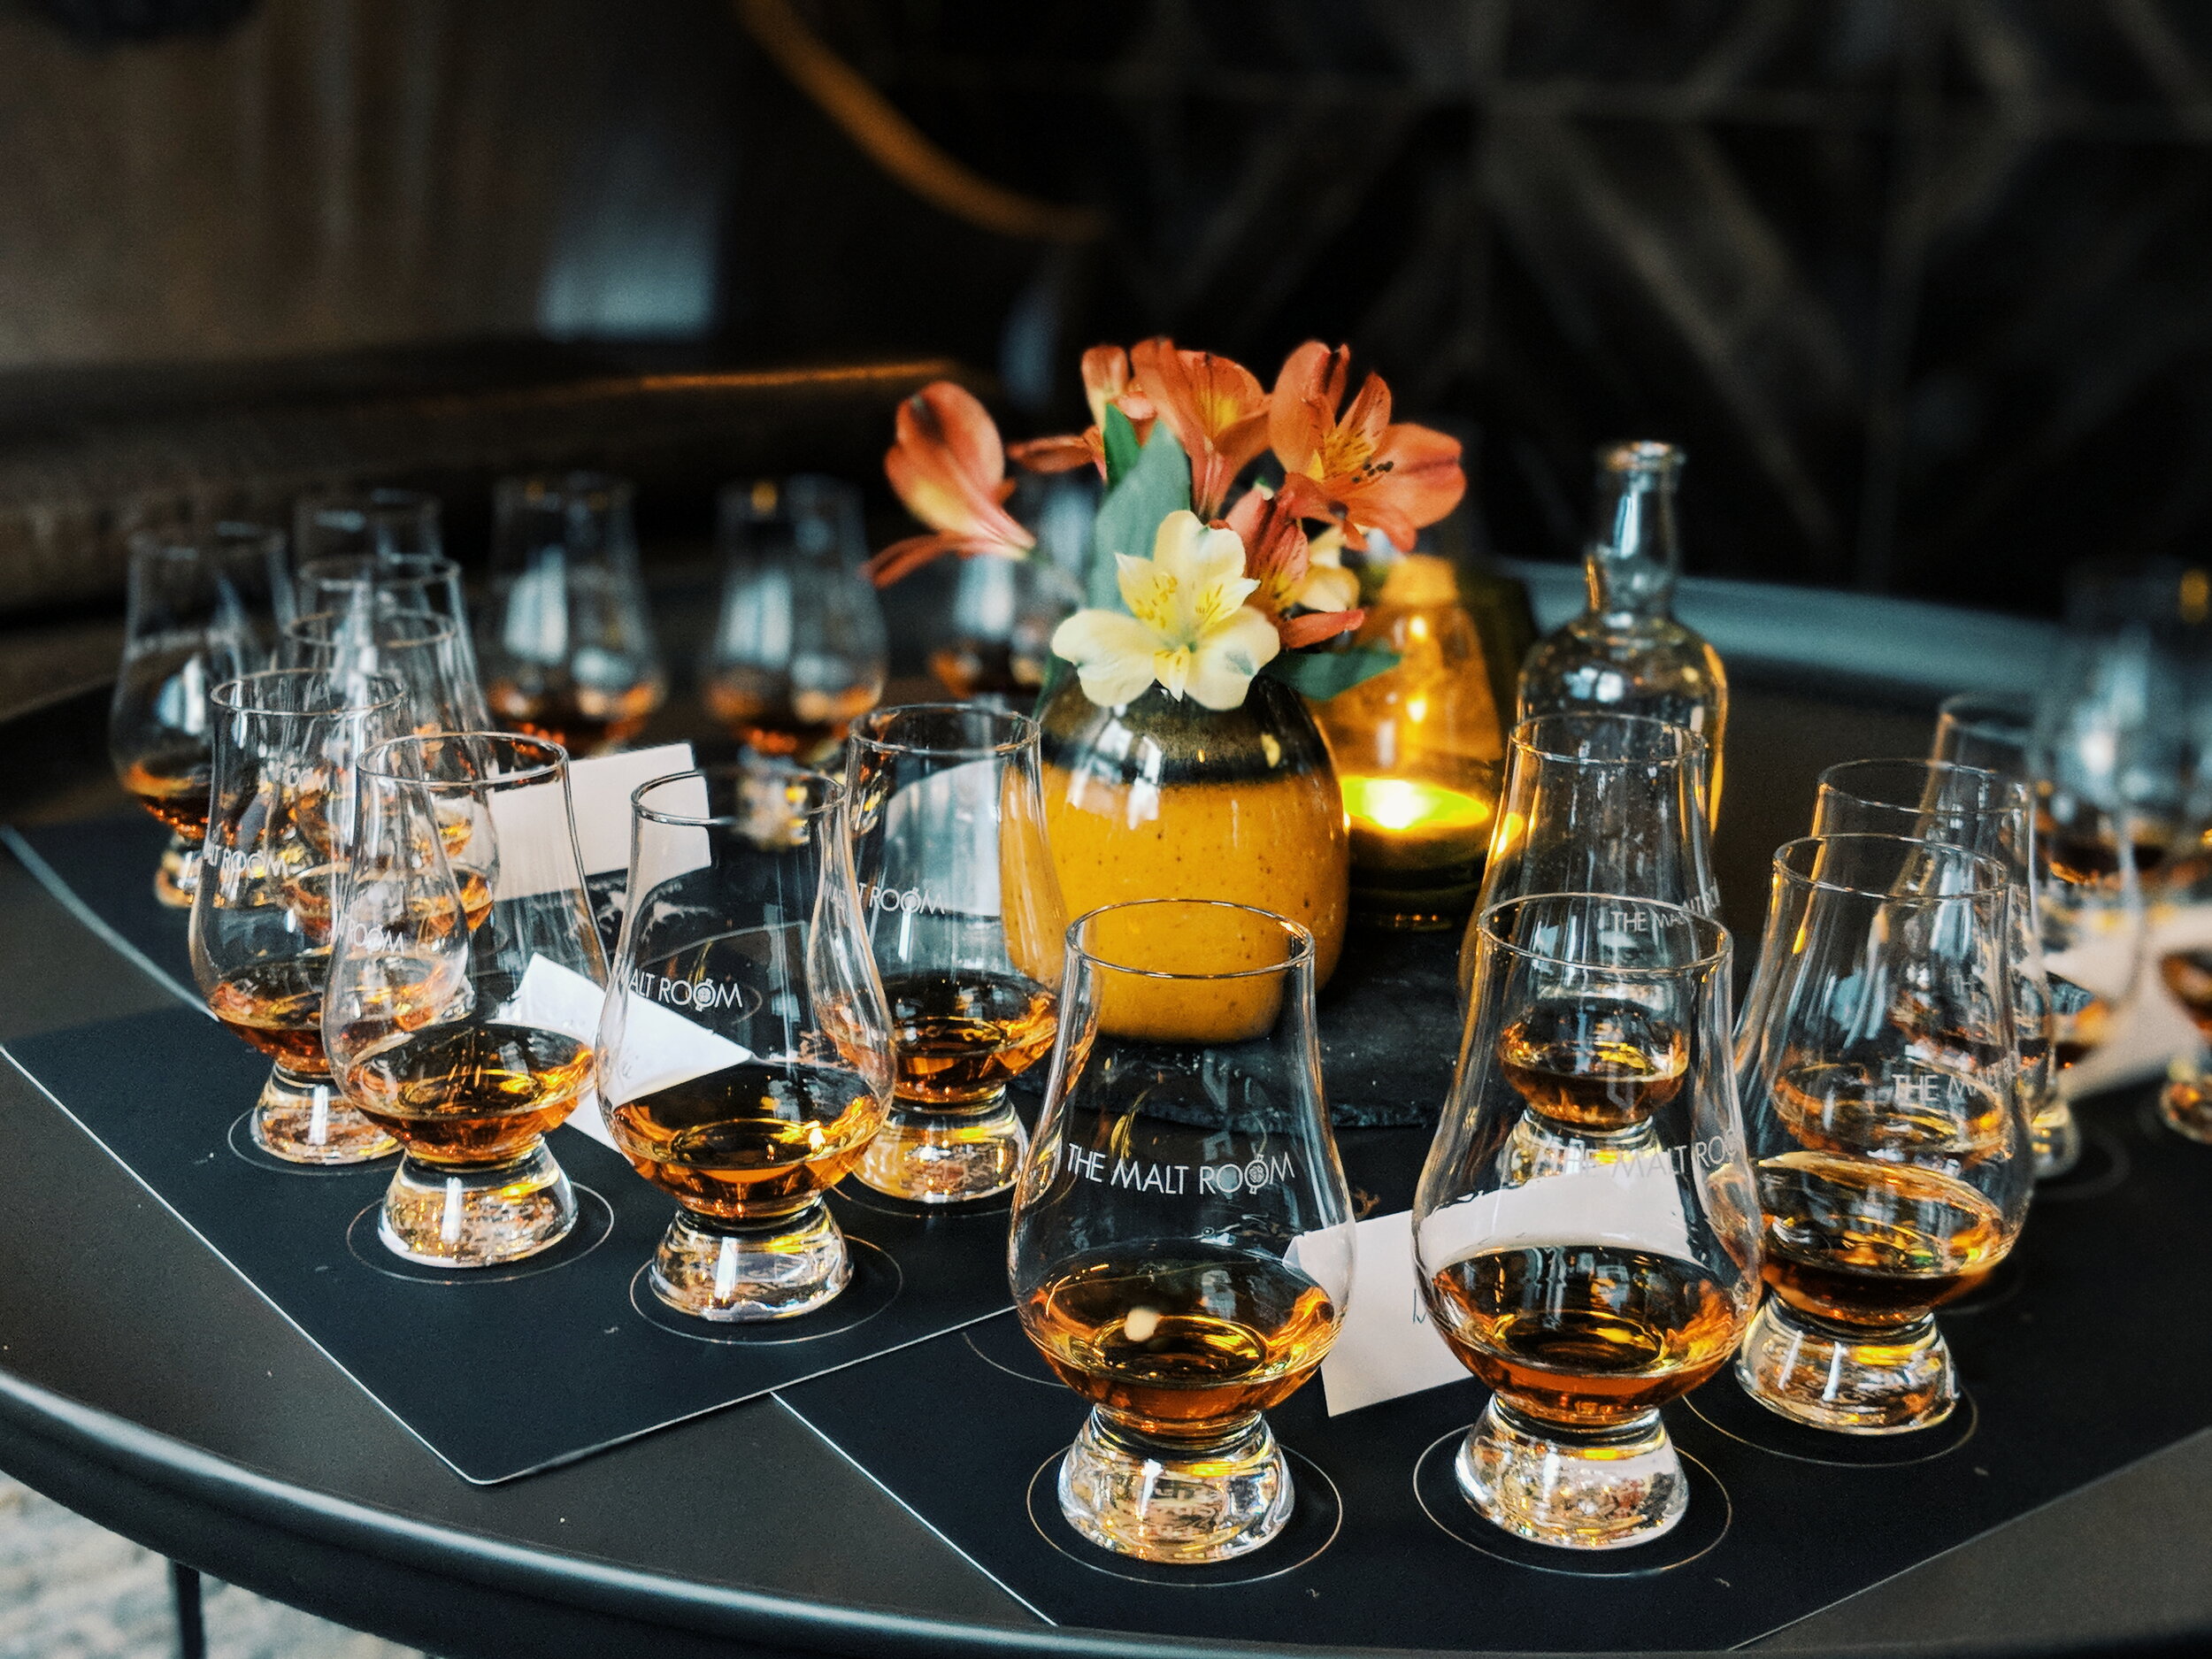 Official Glencairn Crystal Whisky Tasting Glass Spirit of Scotland 